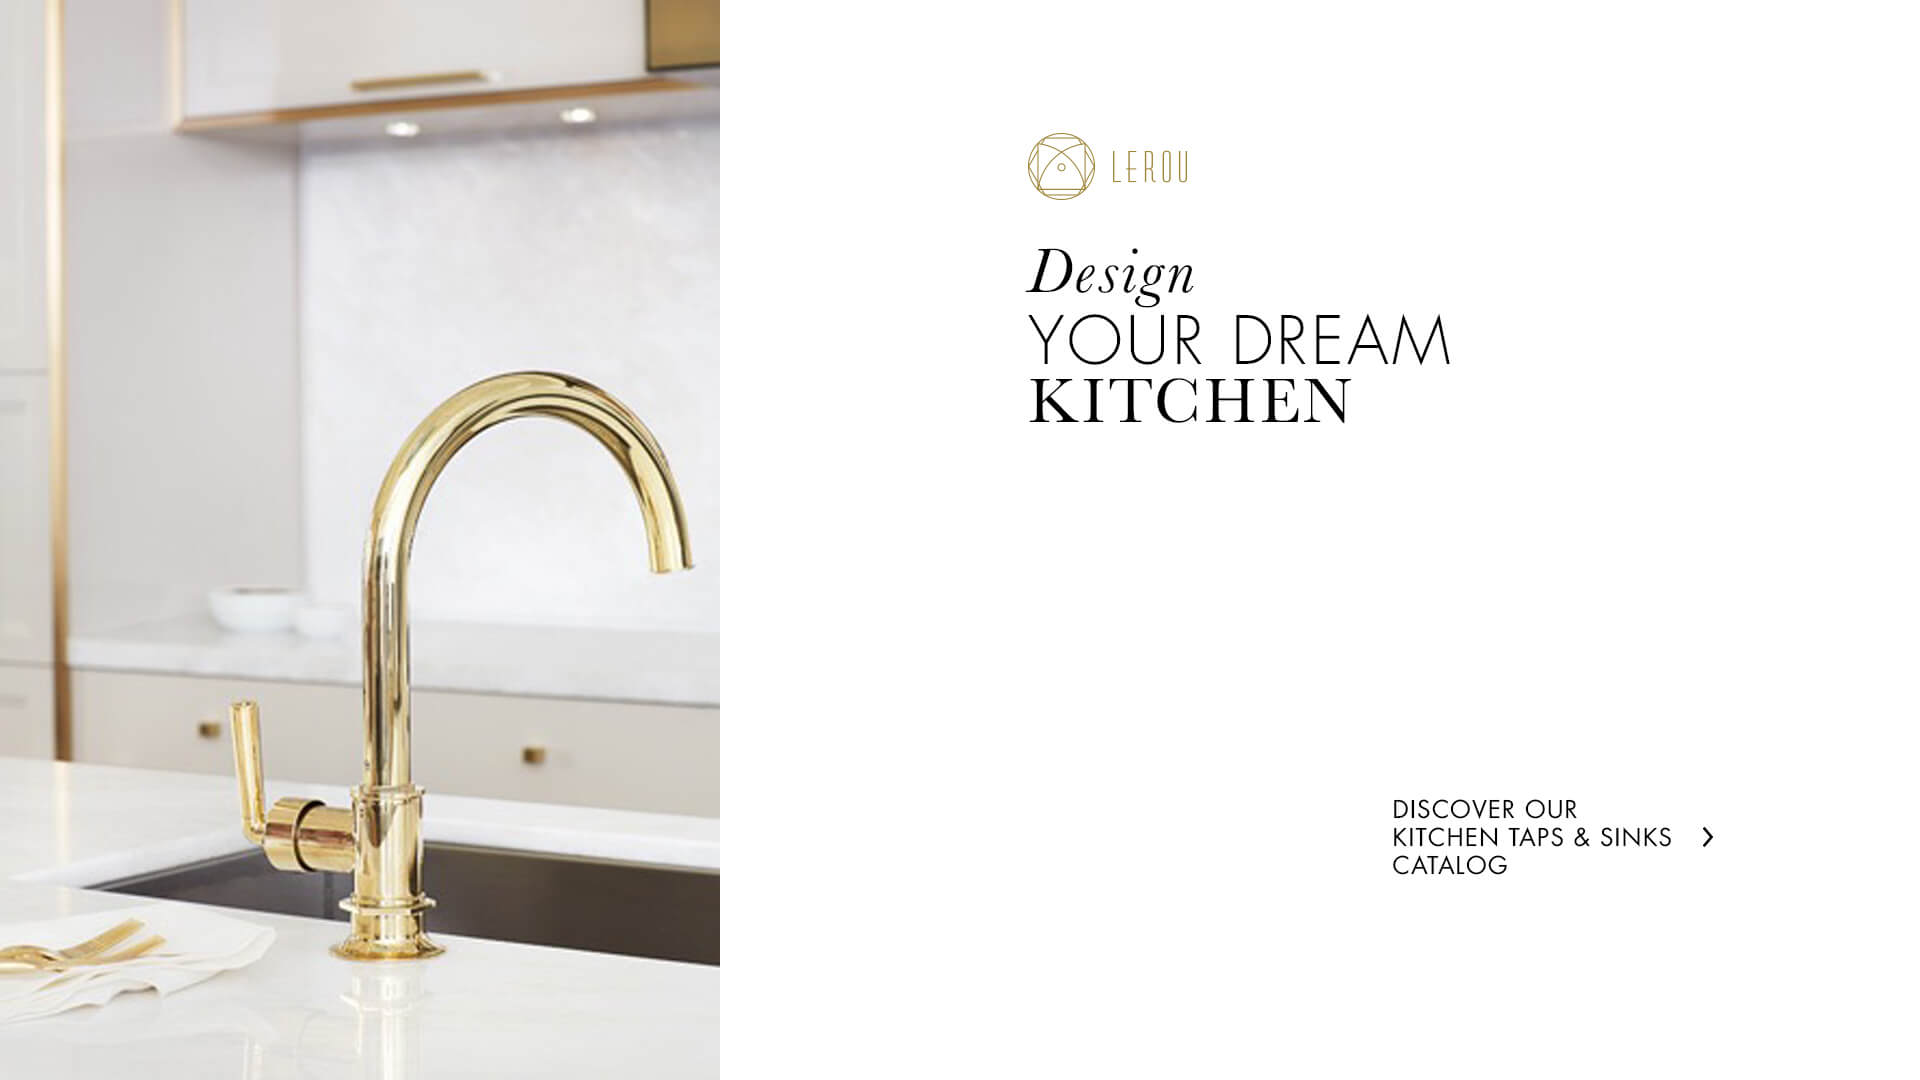 Design Your Dream Kitchen With Lerou Furniture Hardware, Kitchen Taps and Lighting. Ontwerp uw droomkeuken met Lerou Meubelbeslag, Kraanwerk en Verlichting.